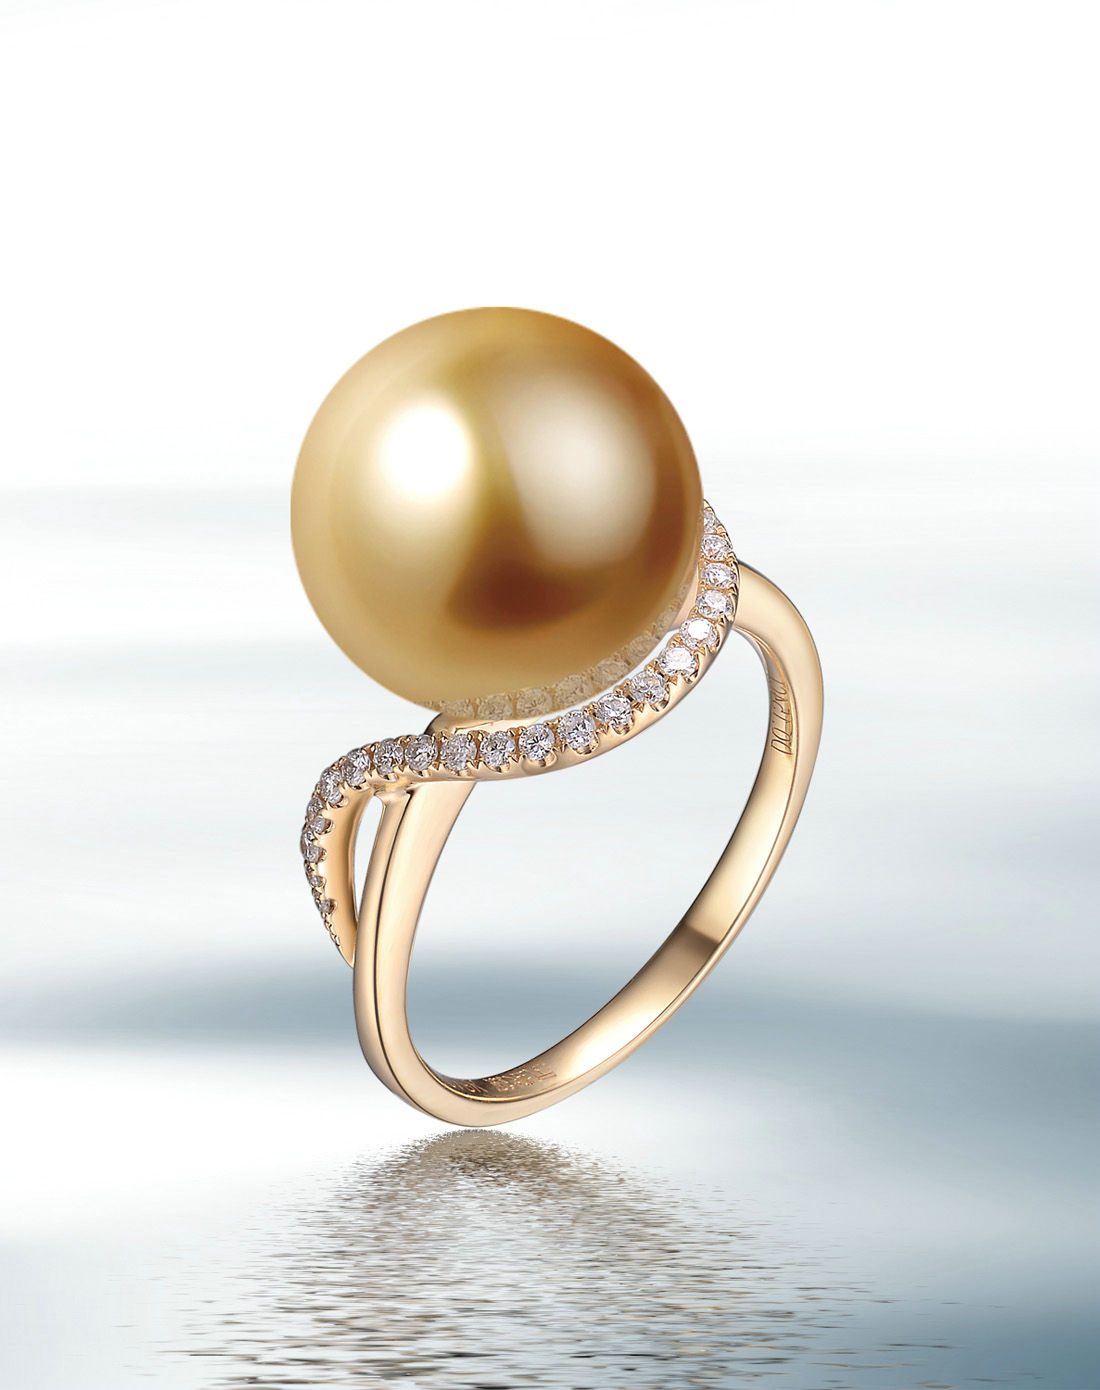 最小的戒指钻石多少钱